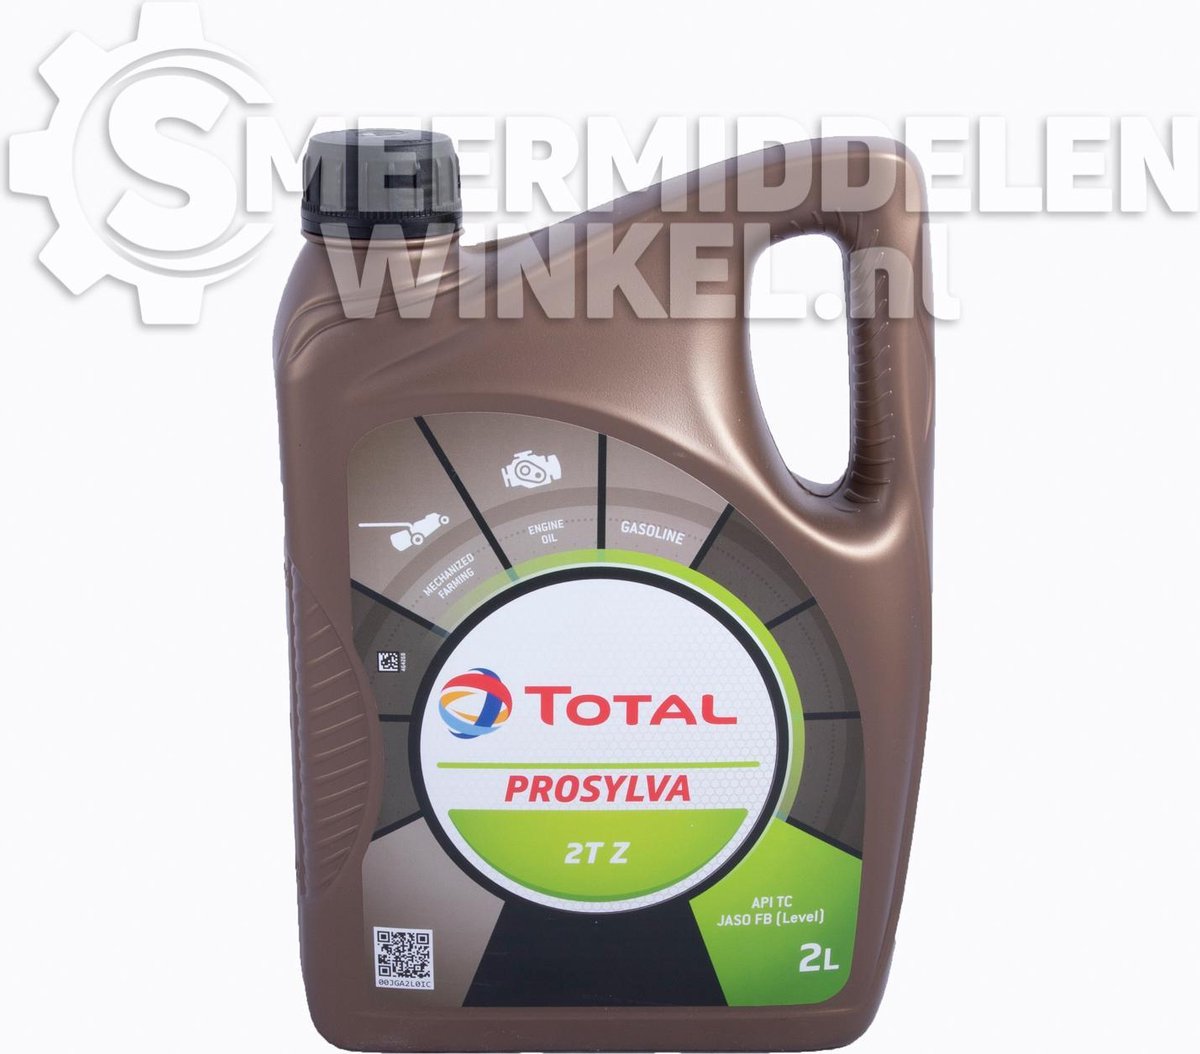 TOTAL PROSYLVA 2T Z (2 litres) | bol.com